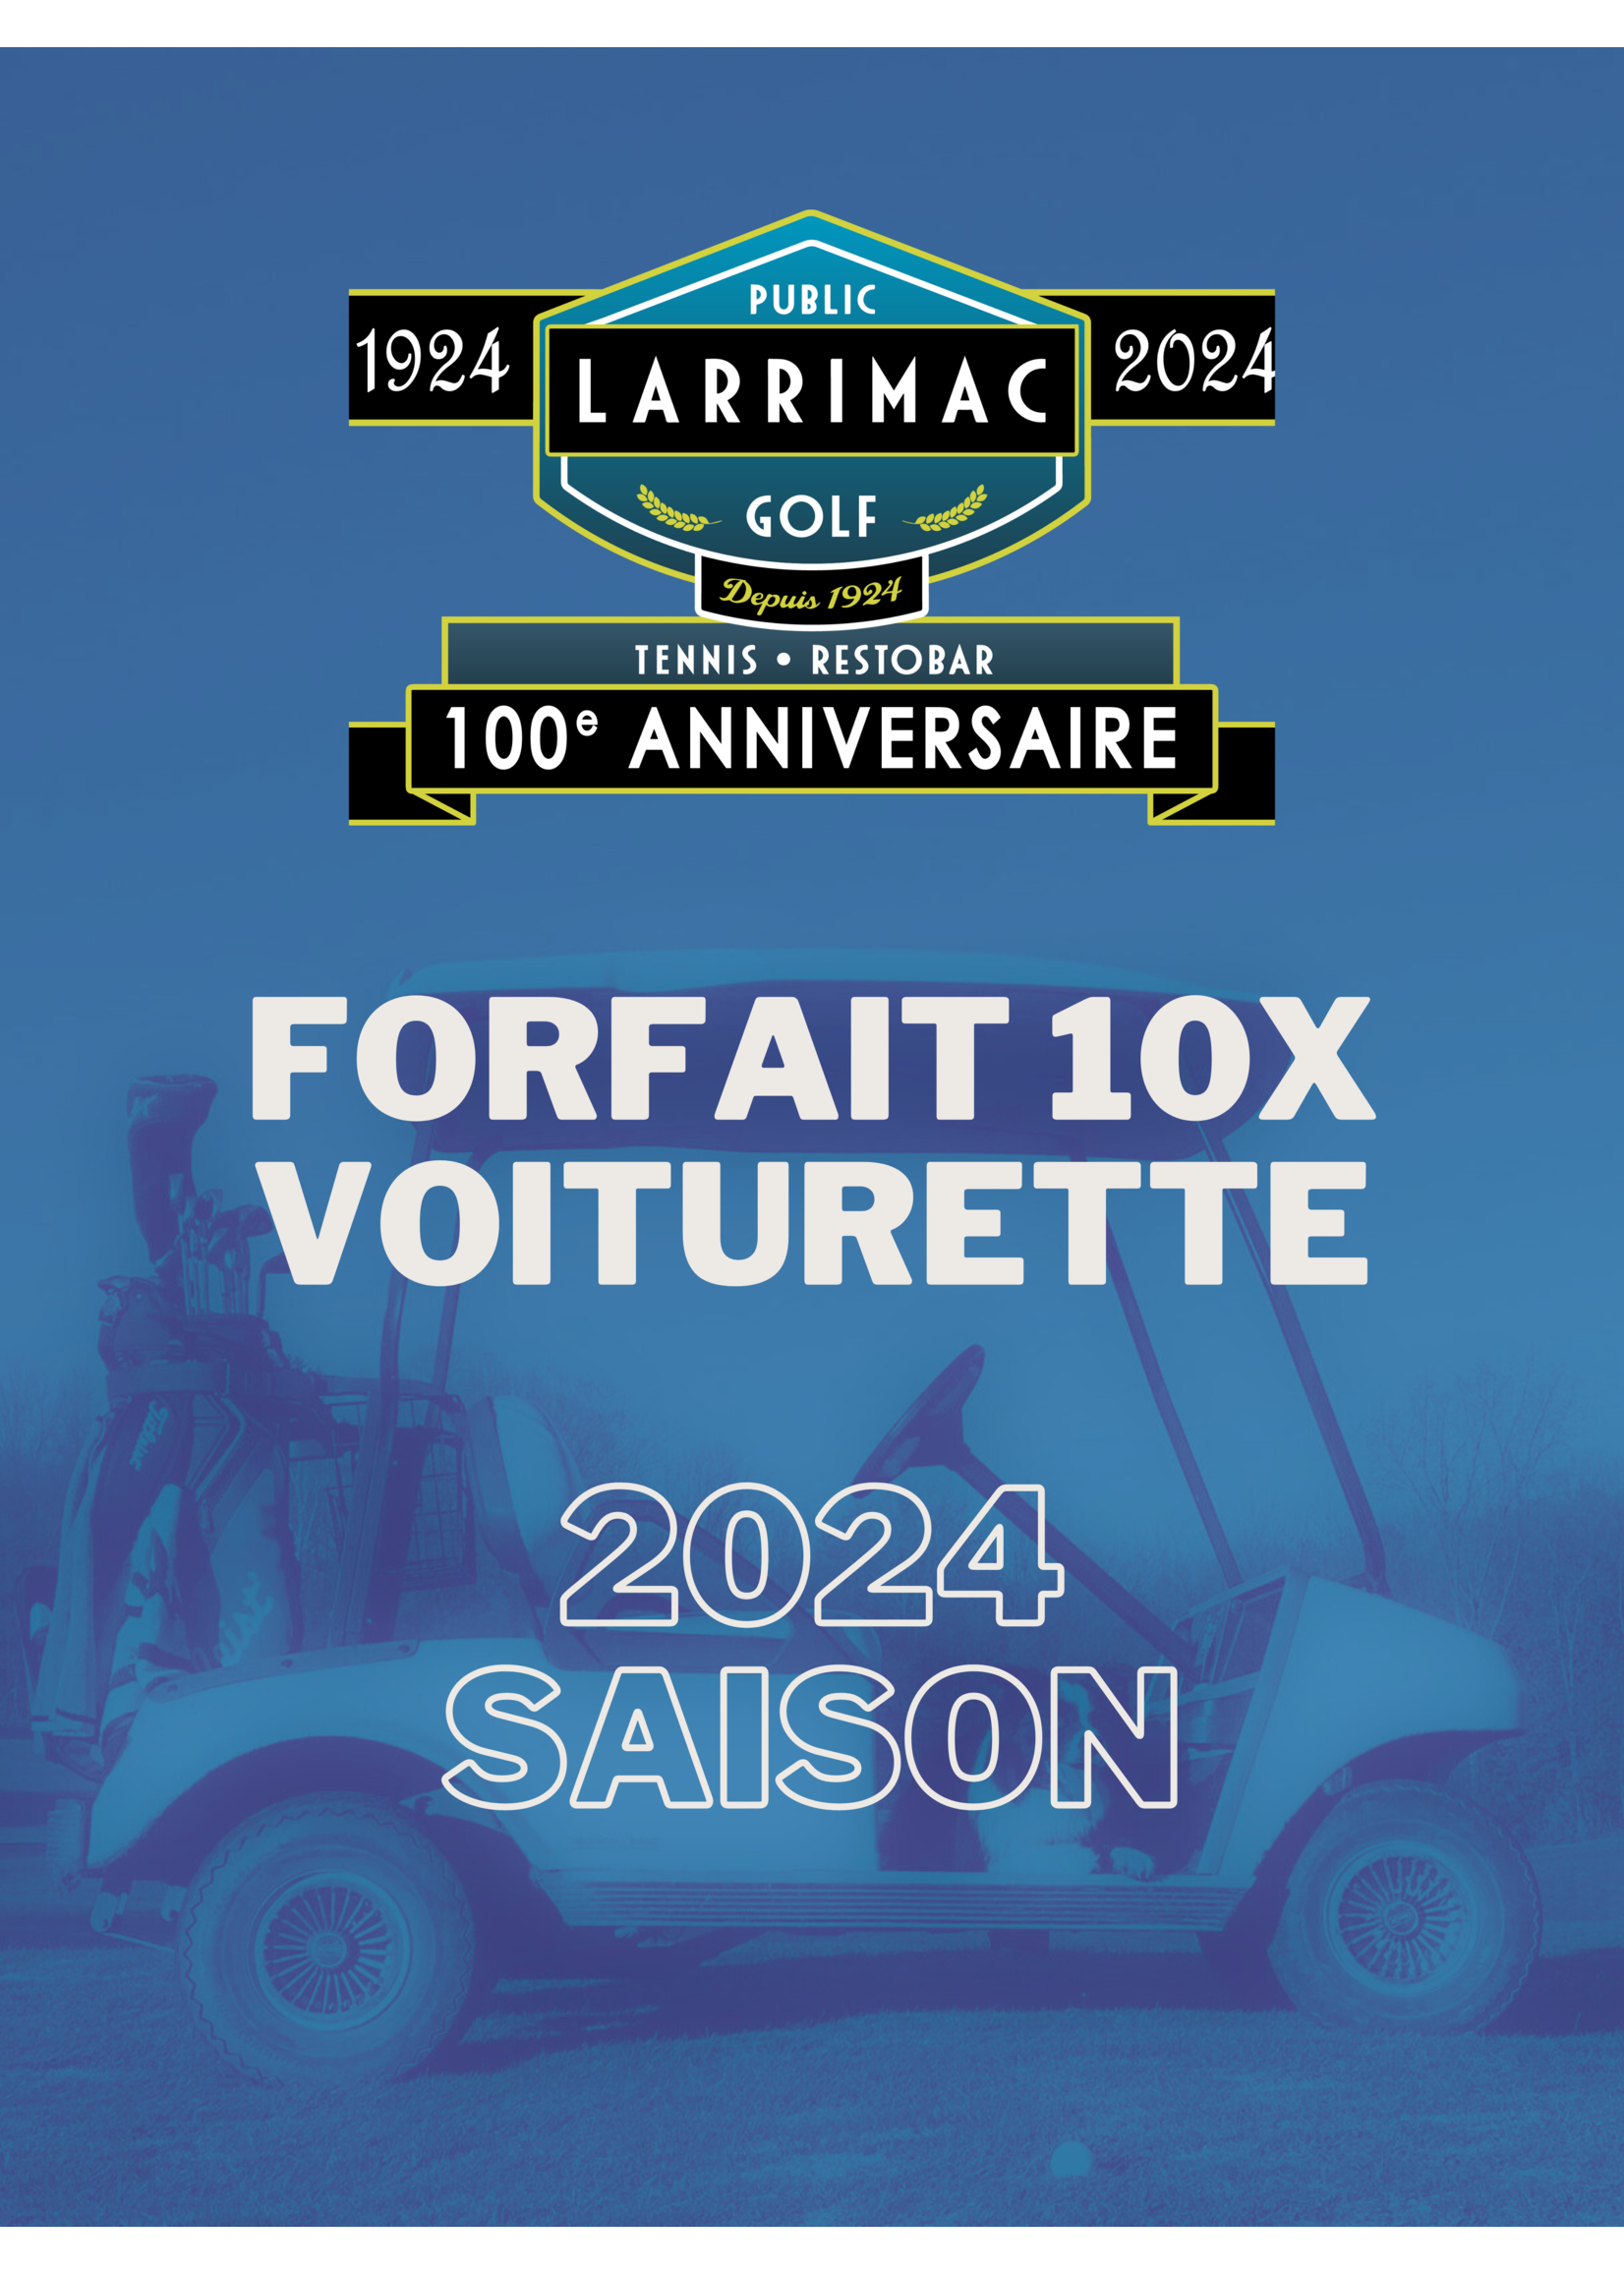 2024 packages 2024 Forfait 10x voiturette  (9-trous) - 10% de réduction !